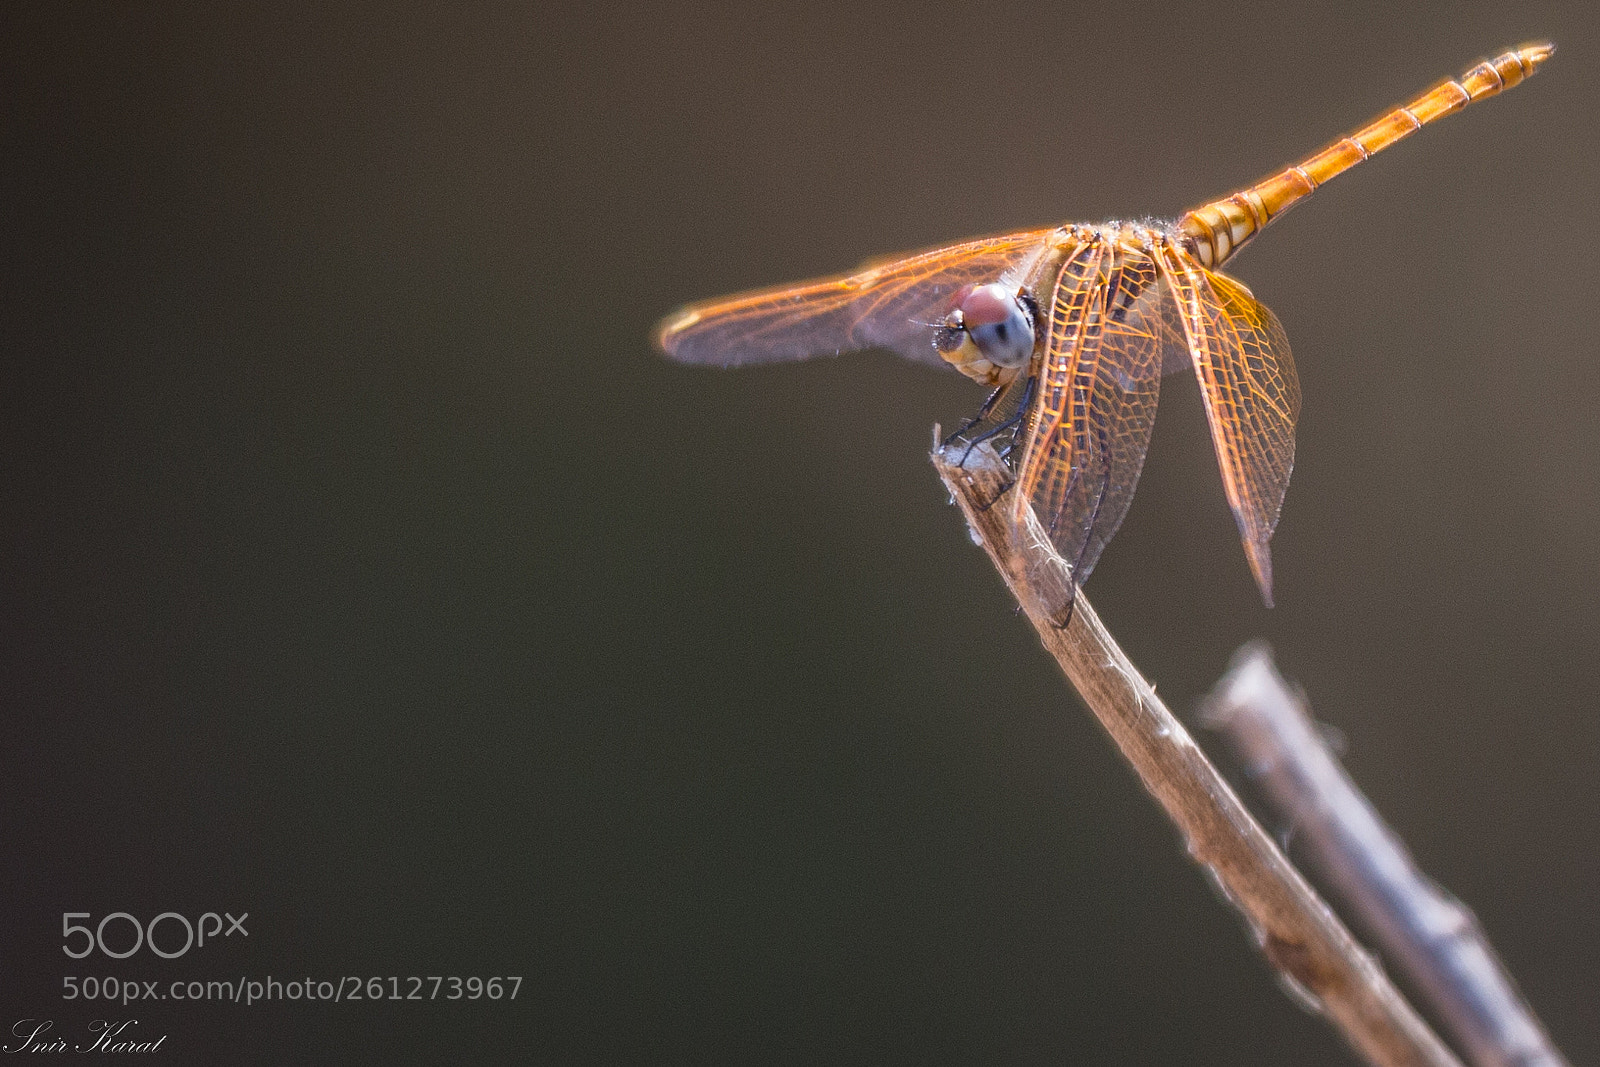 Canon EOS 6D sample photo. Golden darter dragonfly photography